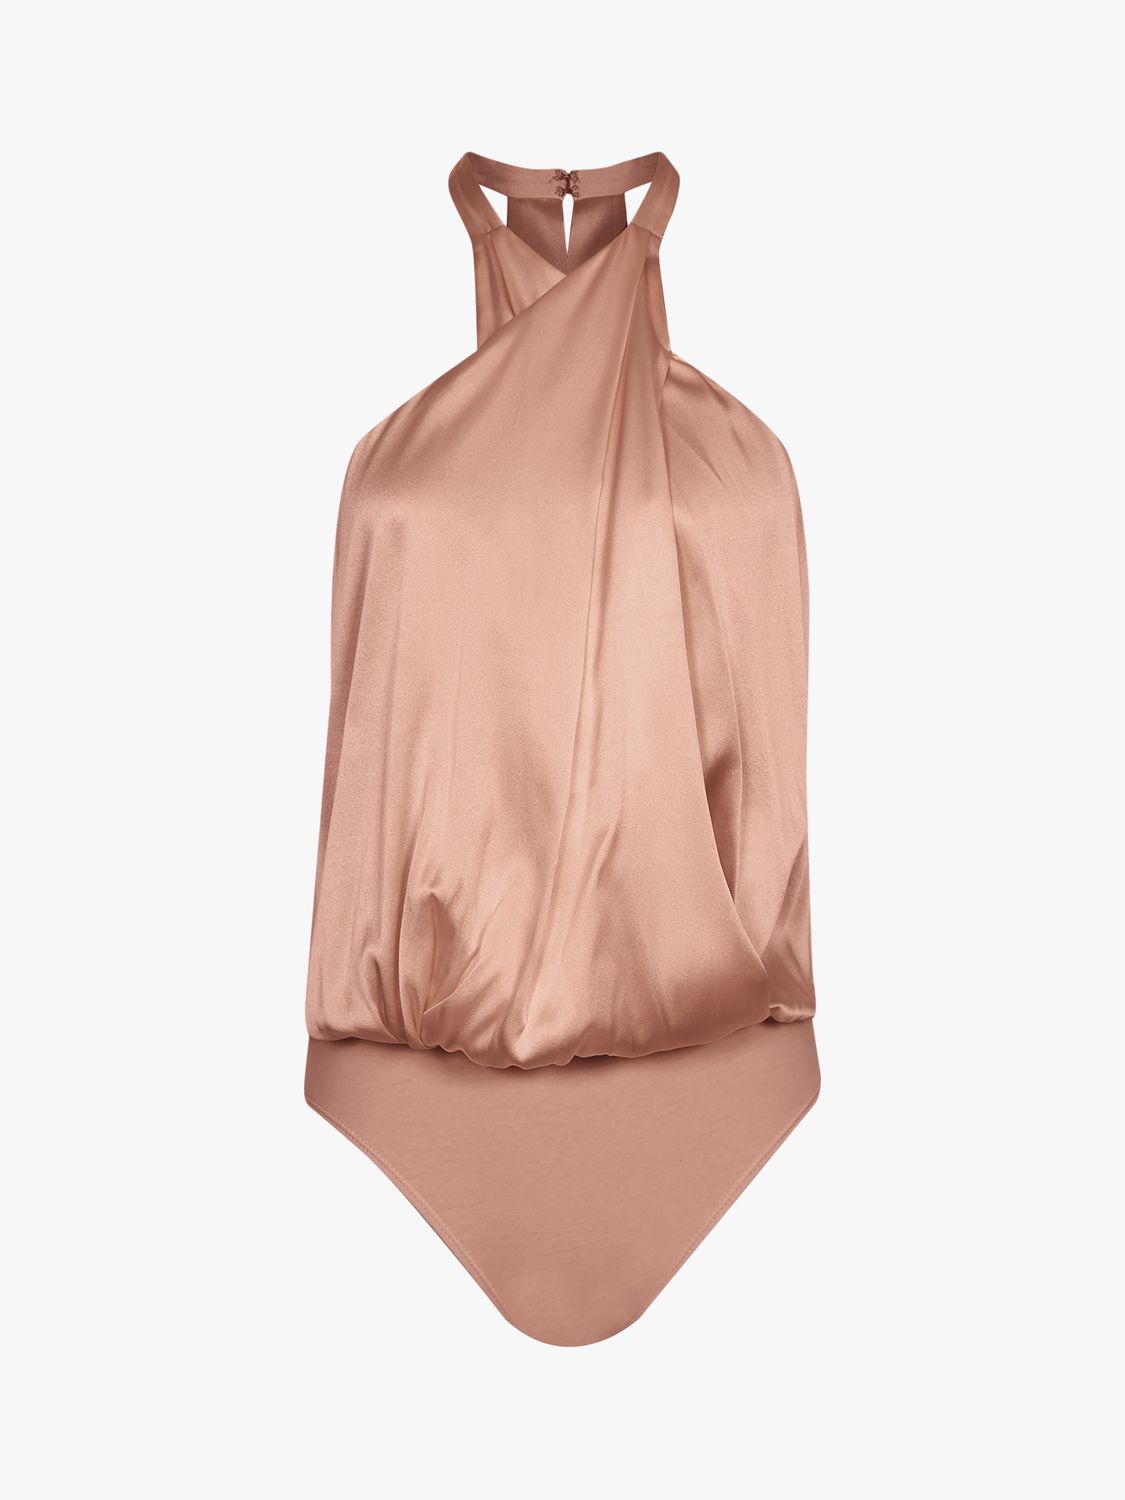 Reiss Lucienne Silk Layered Bodysuit, Blush, S